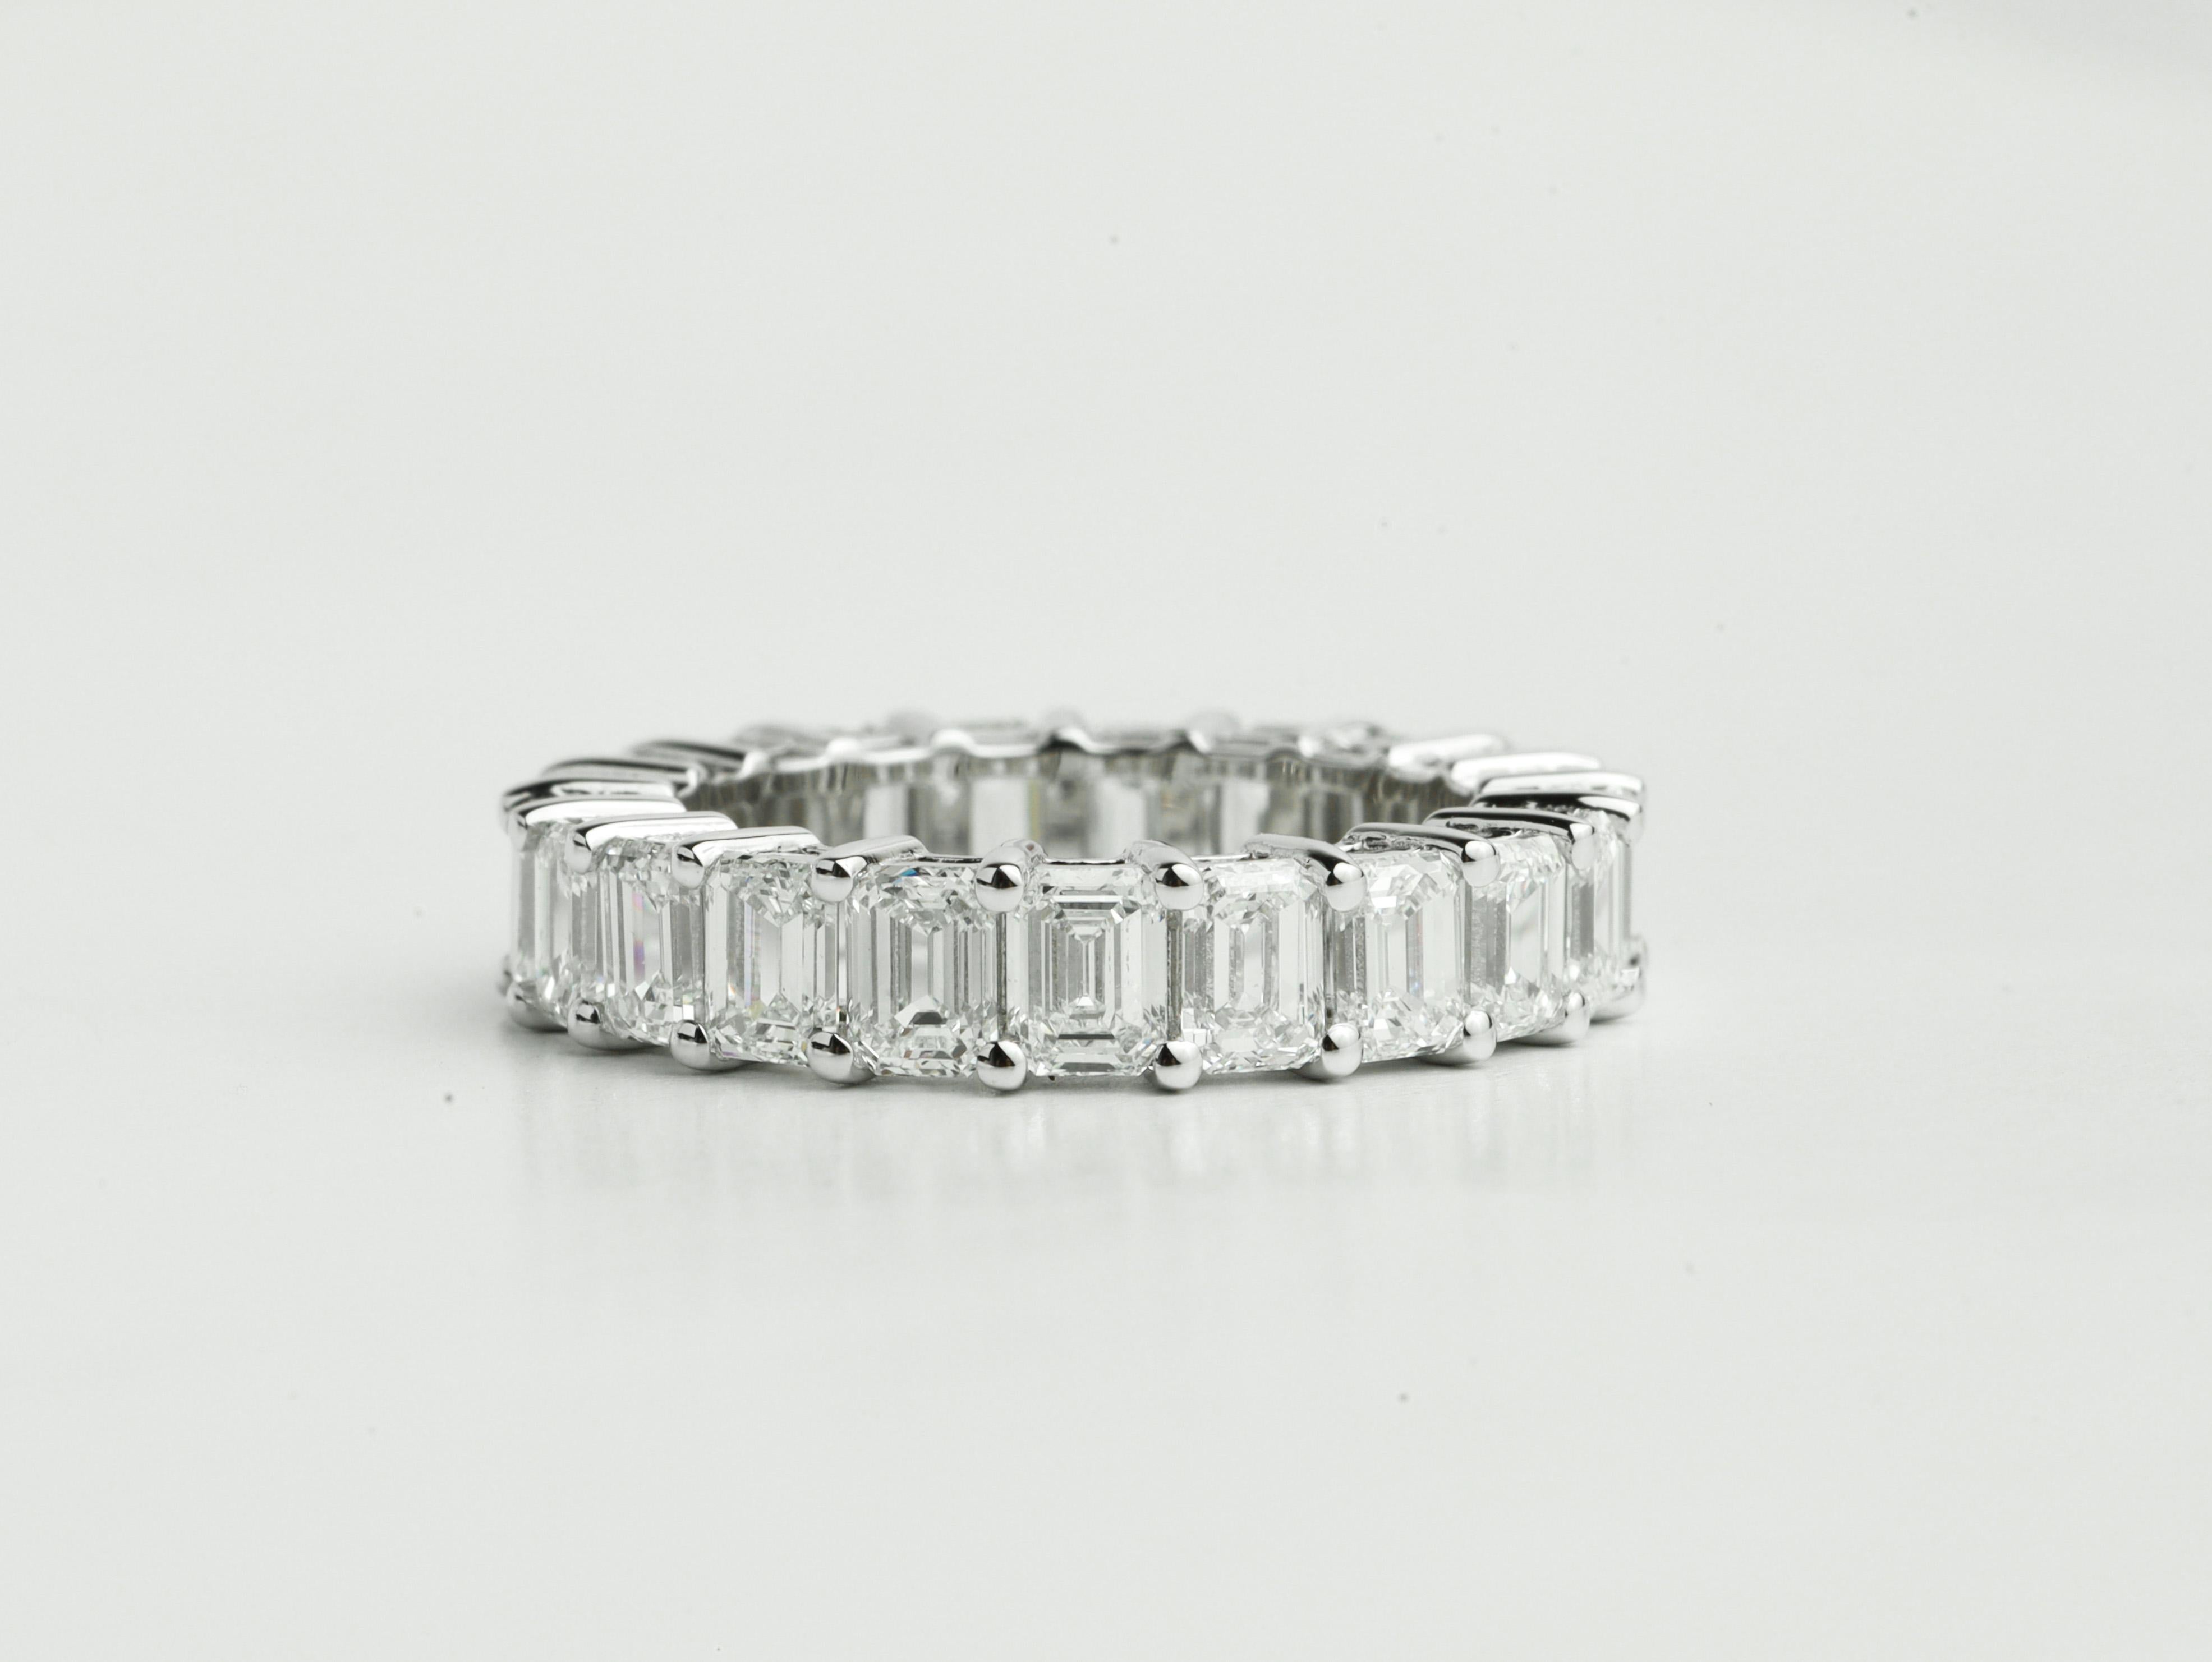 Art Deco Diamant Baguetteschliff Ring Illusion Einstellung, 1,1 TCW F G VS Diamant Ring


Erhältlich in 18 Karat Weißgold.

Das gleiche Design kann auch mit anderen Edelsteinen auf Anfrage hergestellt werden.

Einzelheiten zum Produkt:

- Massiv